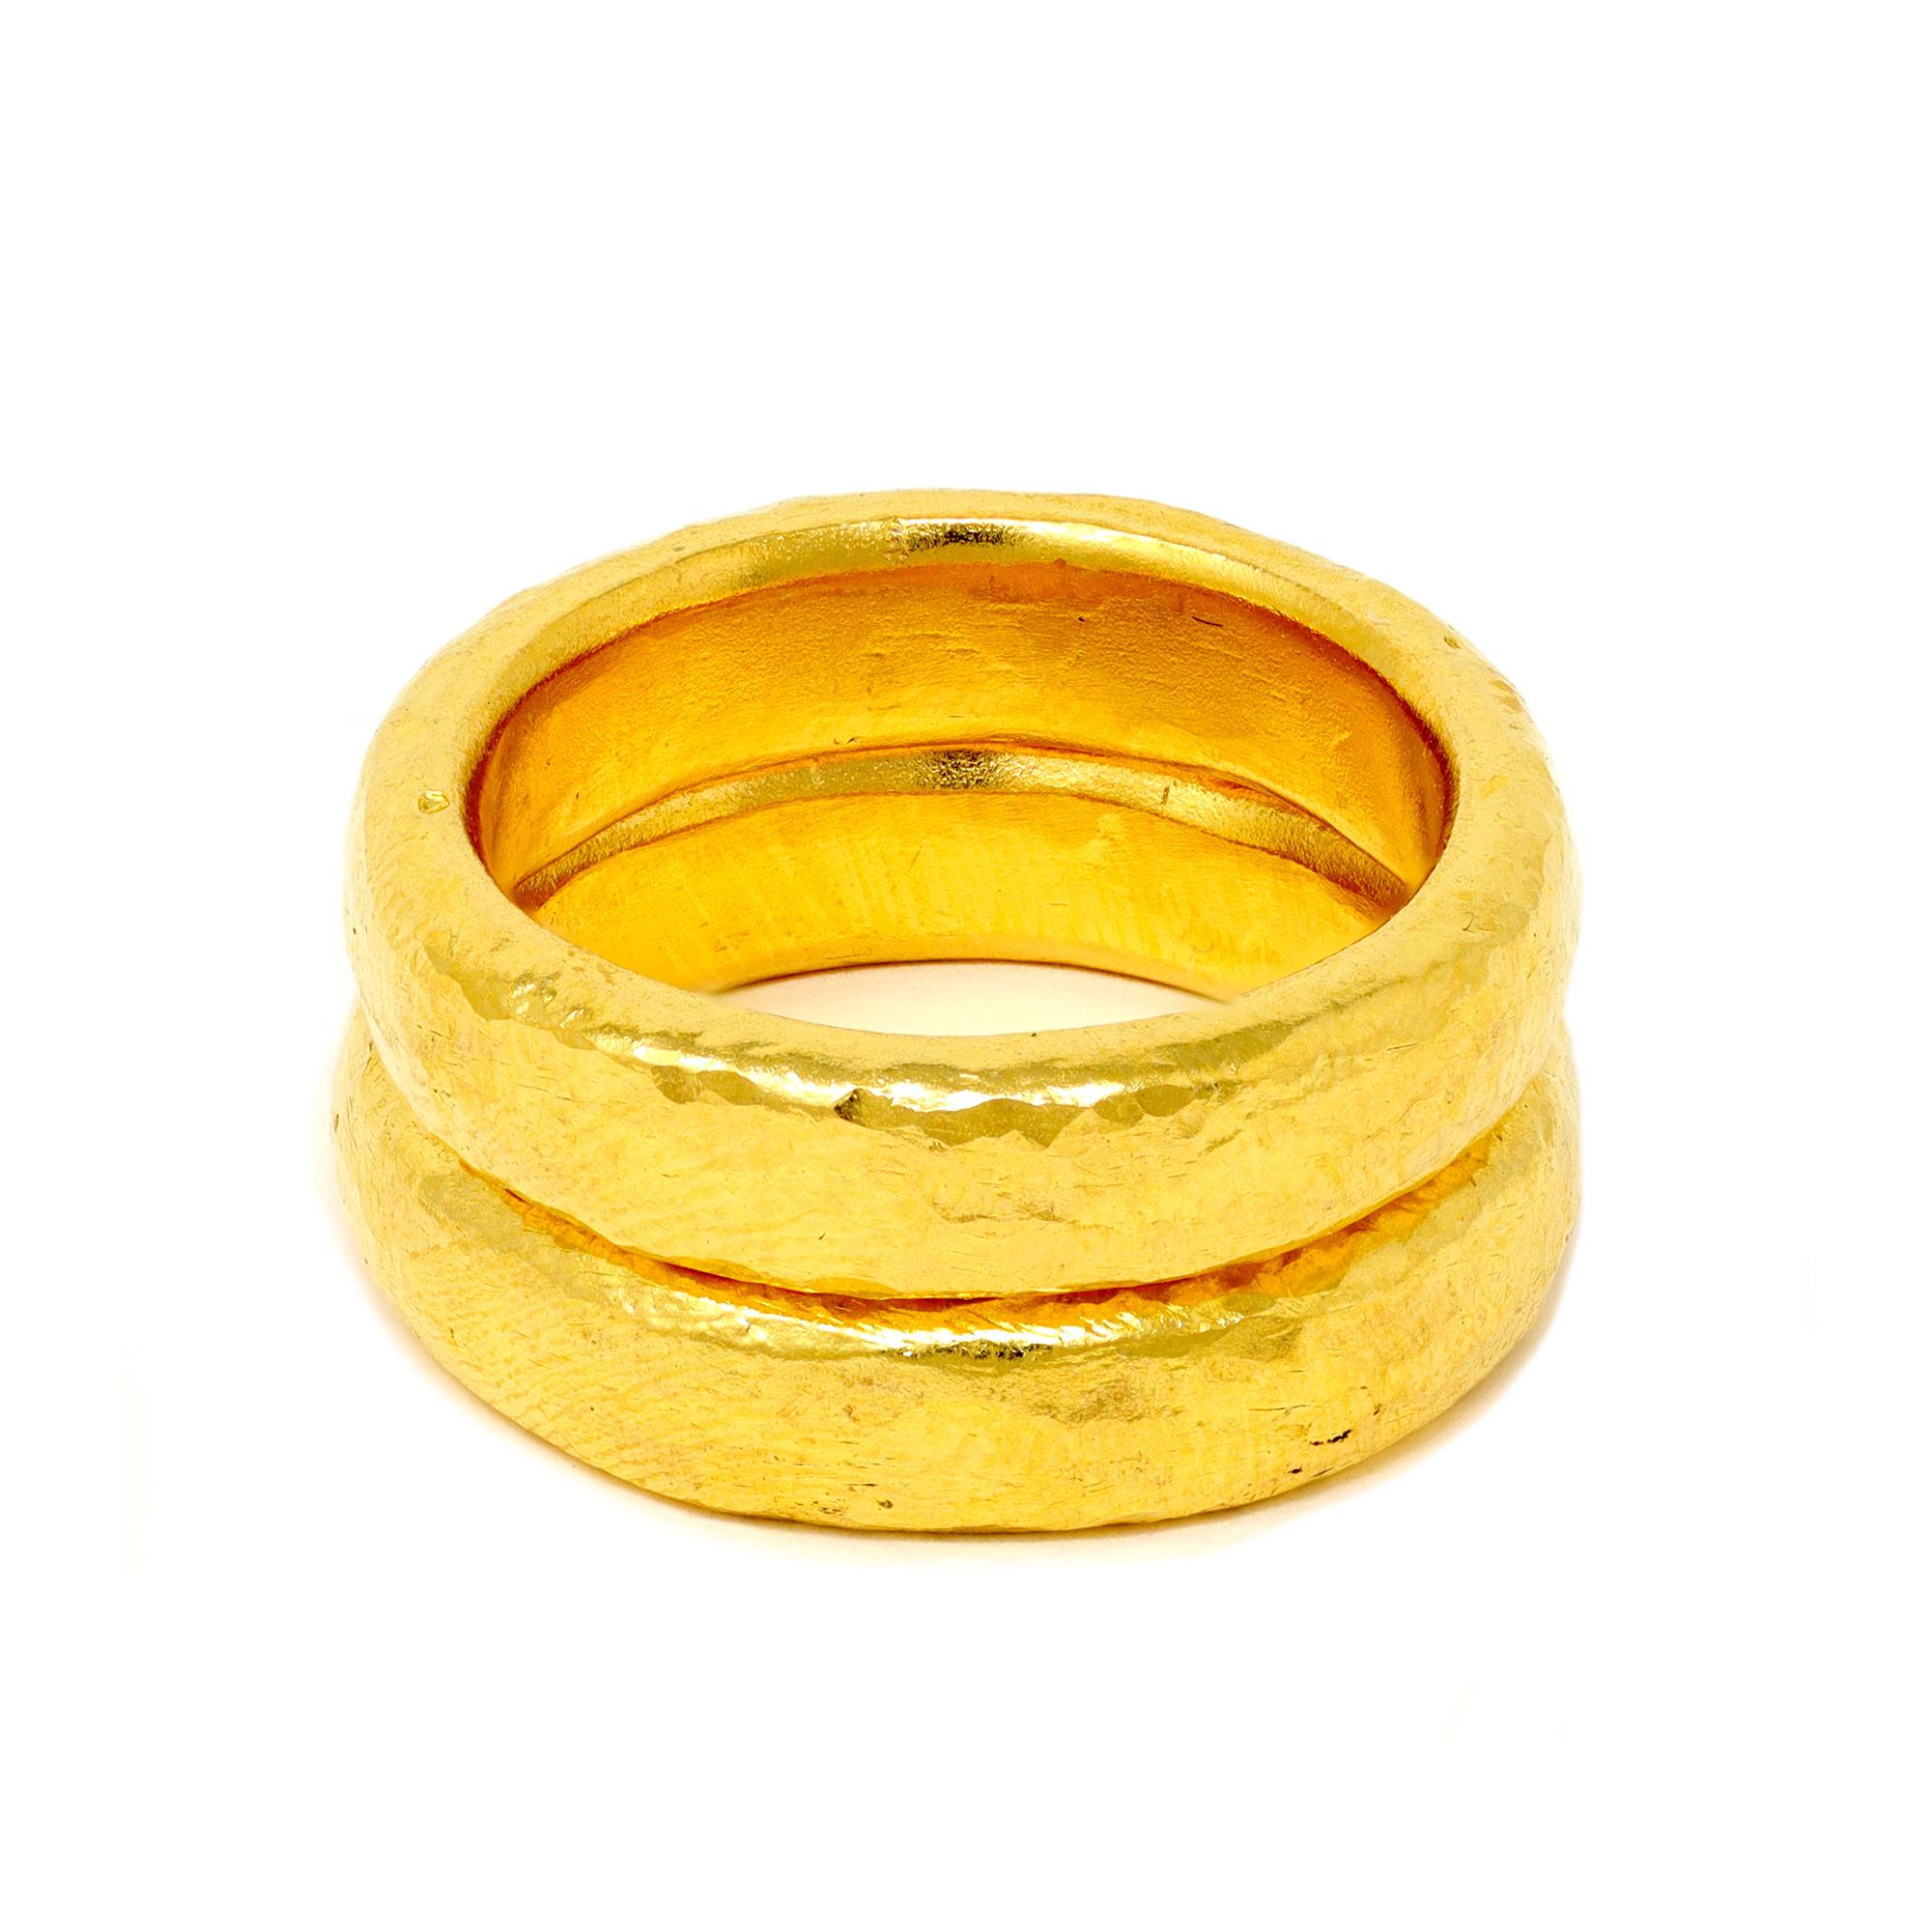 Hübsches Paar handgefertigter Ringe aus 24 Karat Gold von Rosaria Varra. Das reine 24-karätige Gold macht diese Bänder wesentlich schwerer, denn mit jeweils 15,0 Gramm sitzen diese handgefertigten Bänder aus reinem Gold anmutig am Finger und können